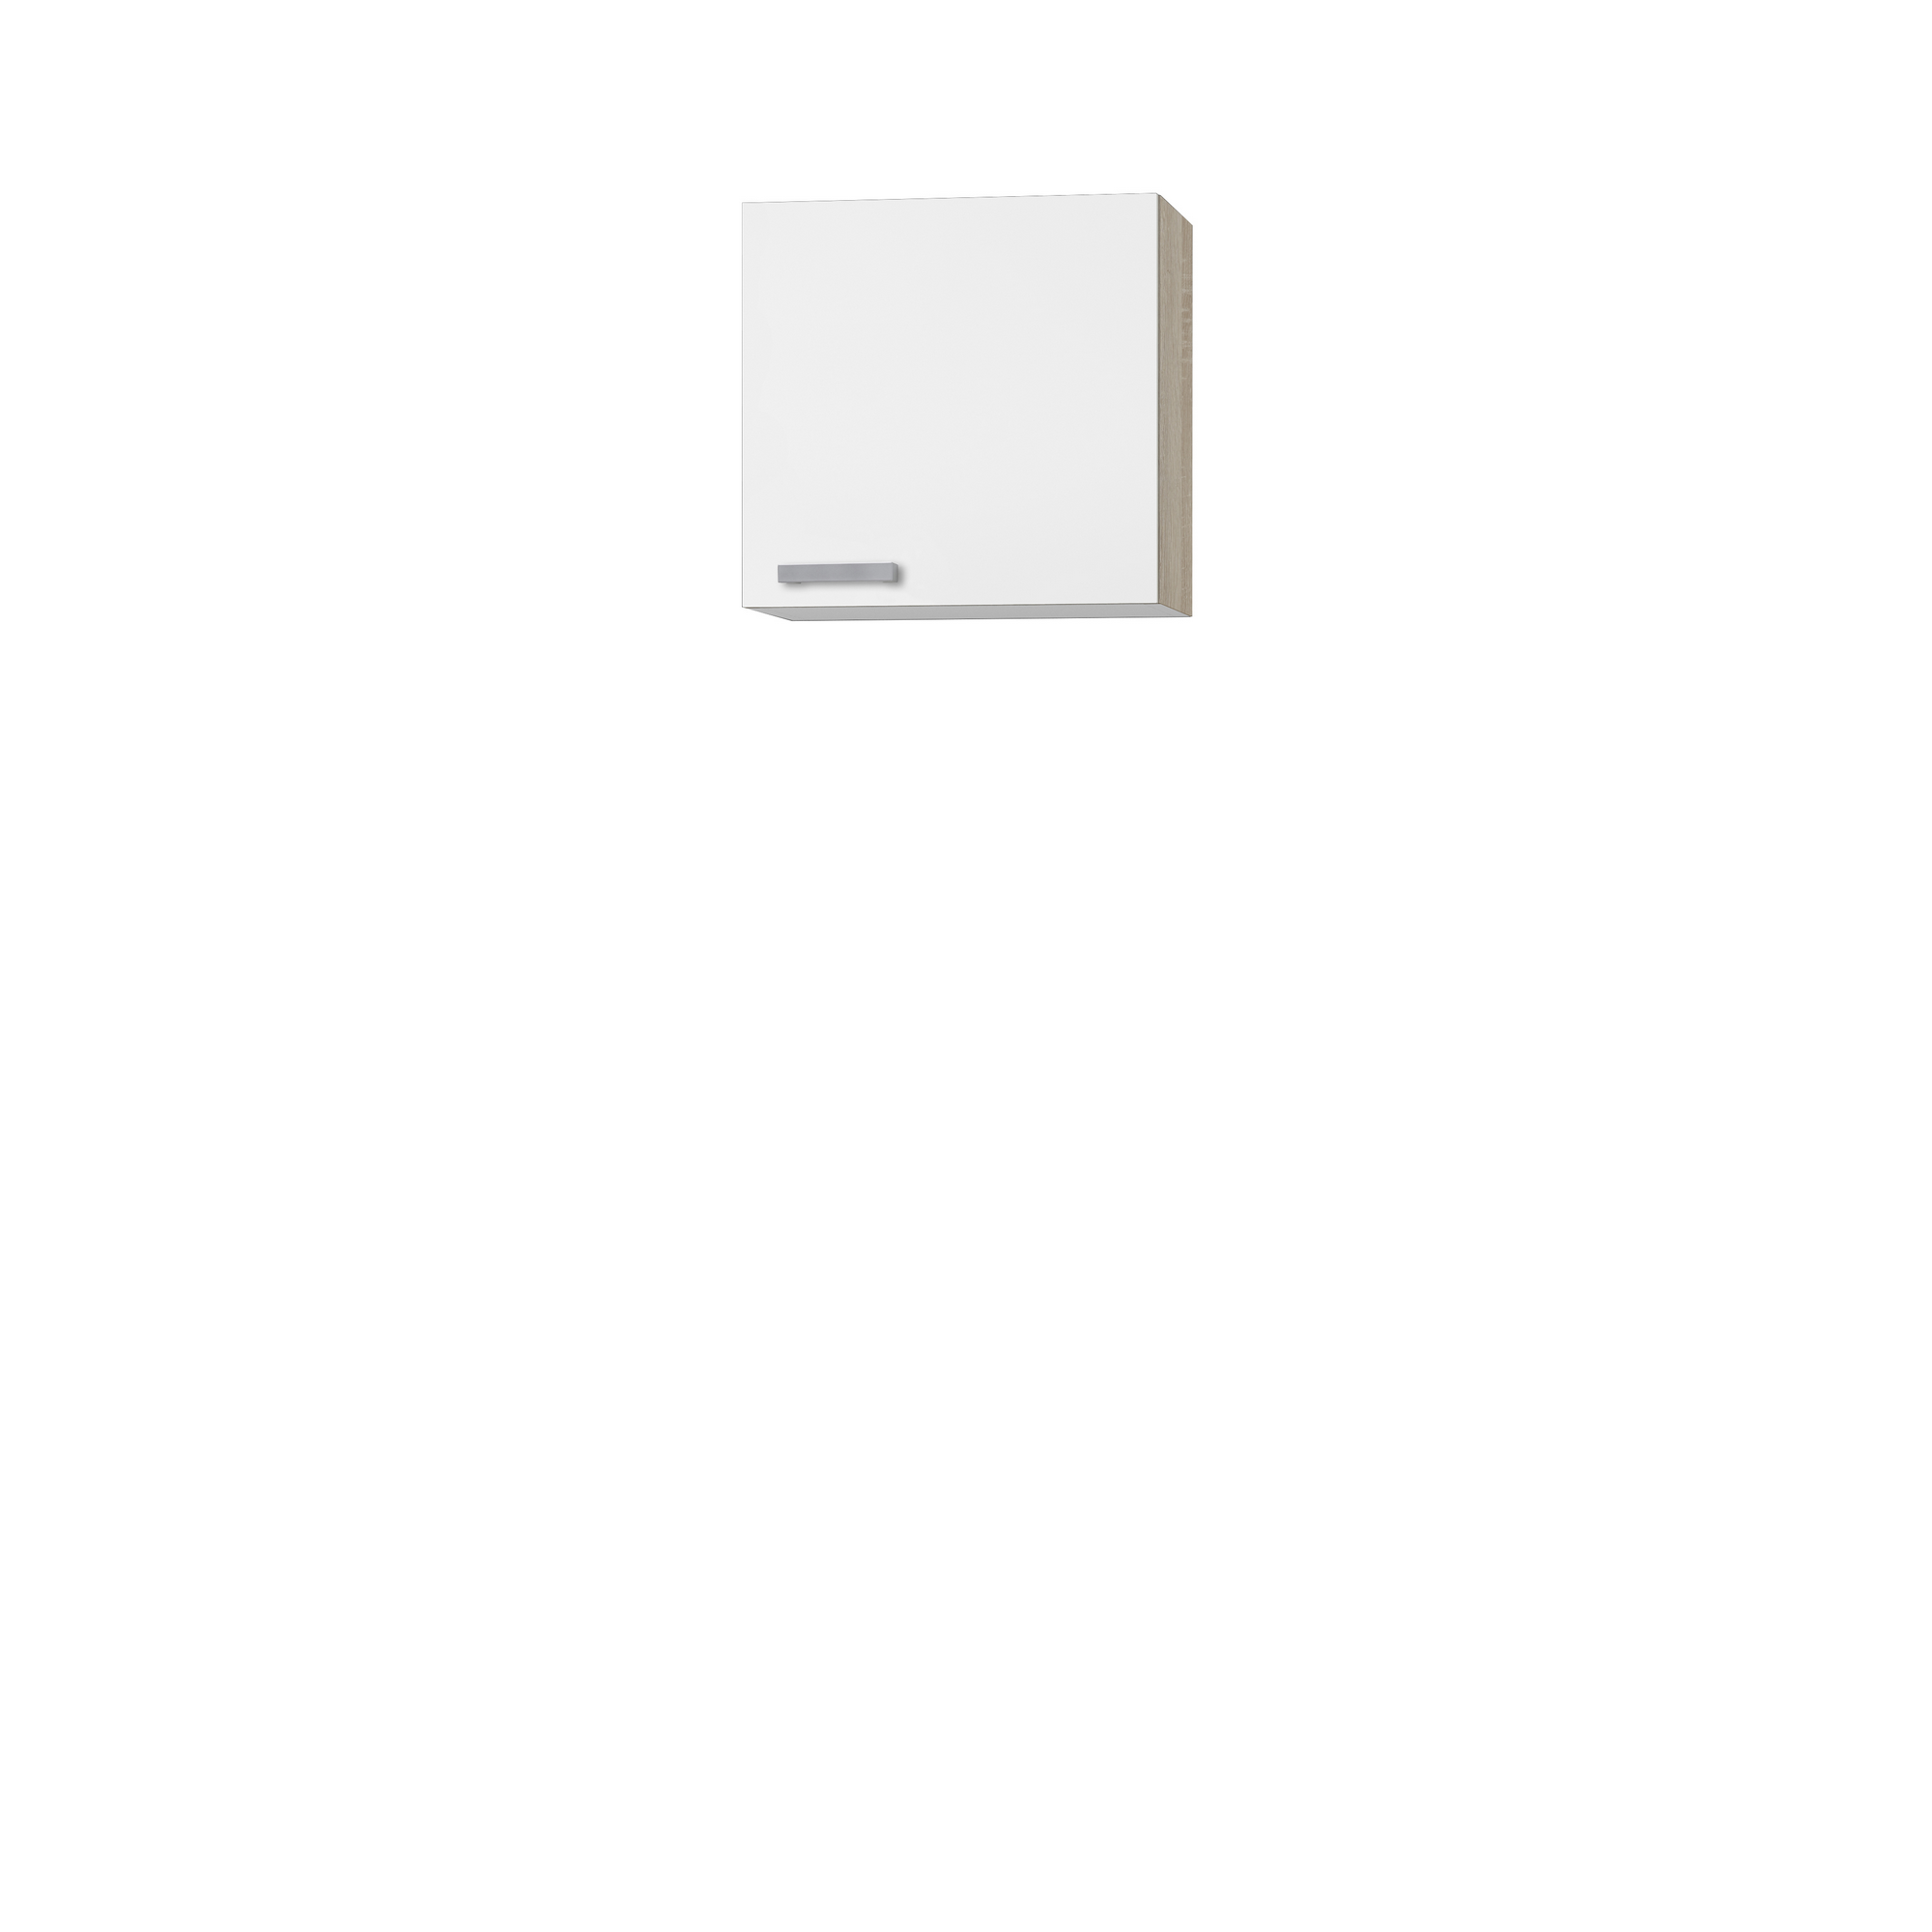 Oberschrank 'OPTIkult Zamora' weiß/eichefarben 60 x 57,6 x 60 cm + product picture